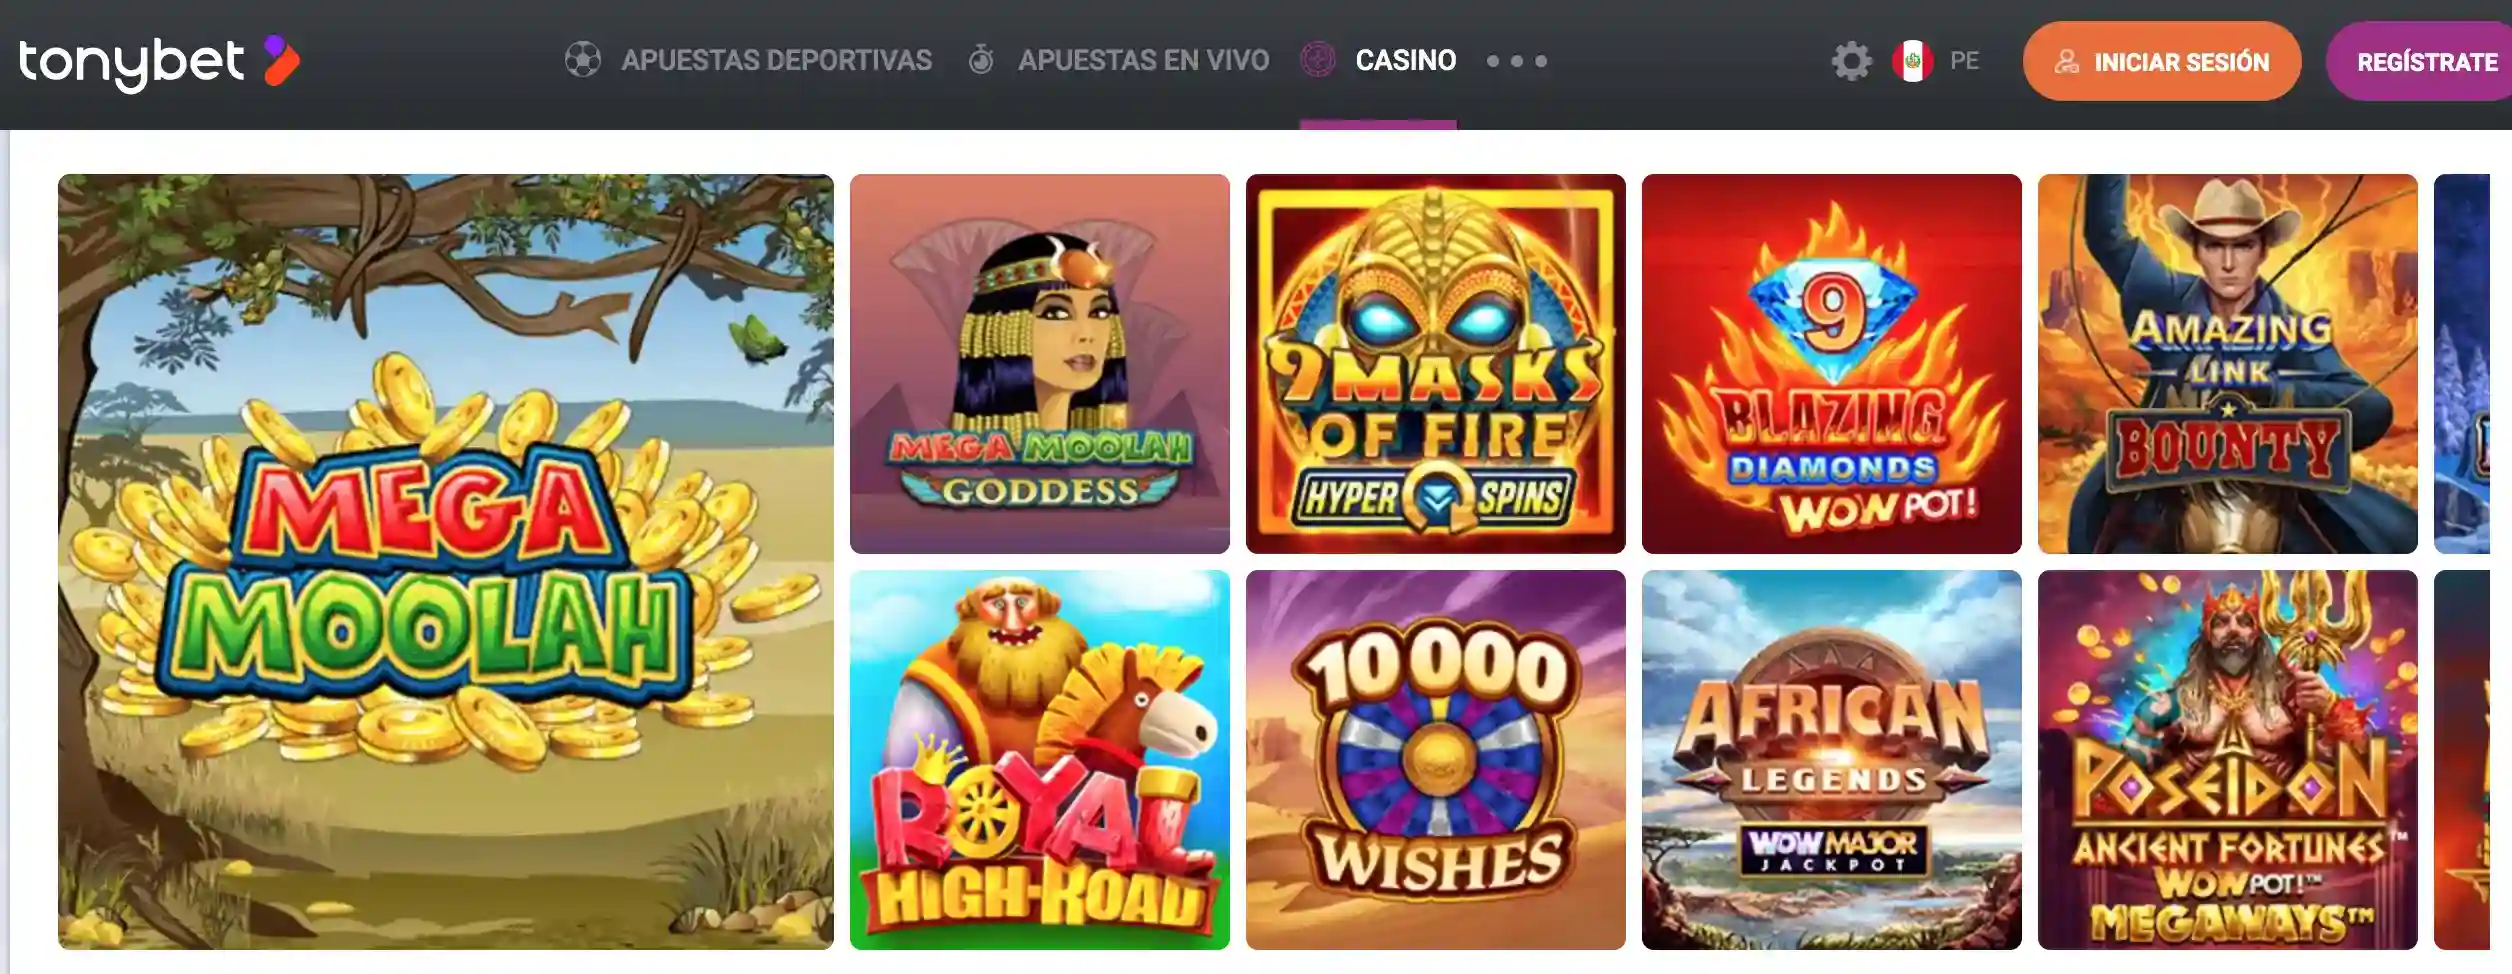 Juegos en Tonybet Casino Perú